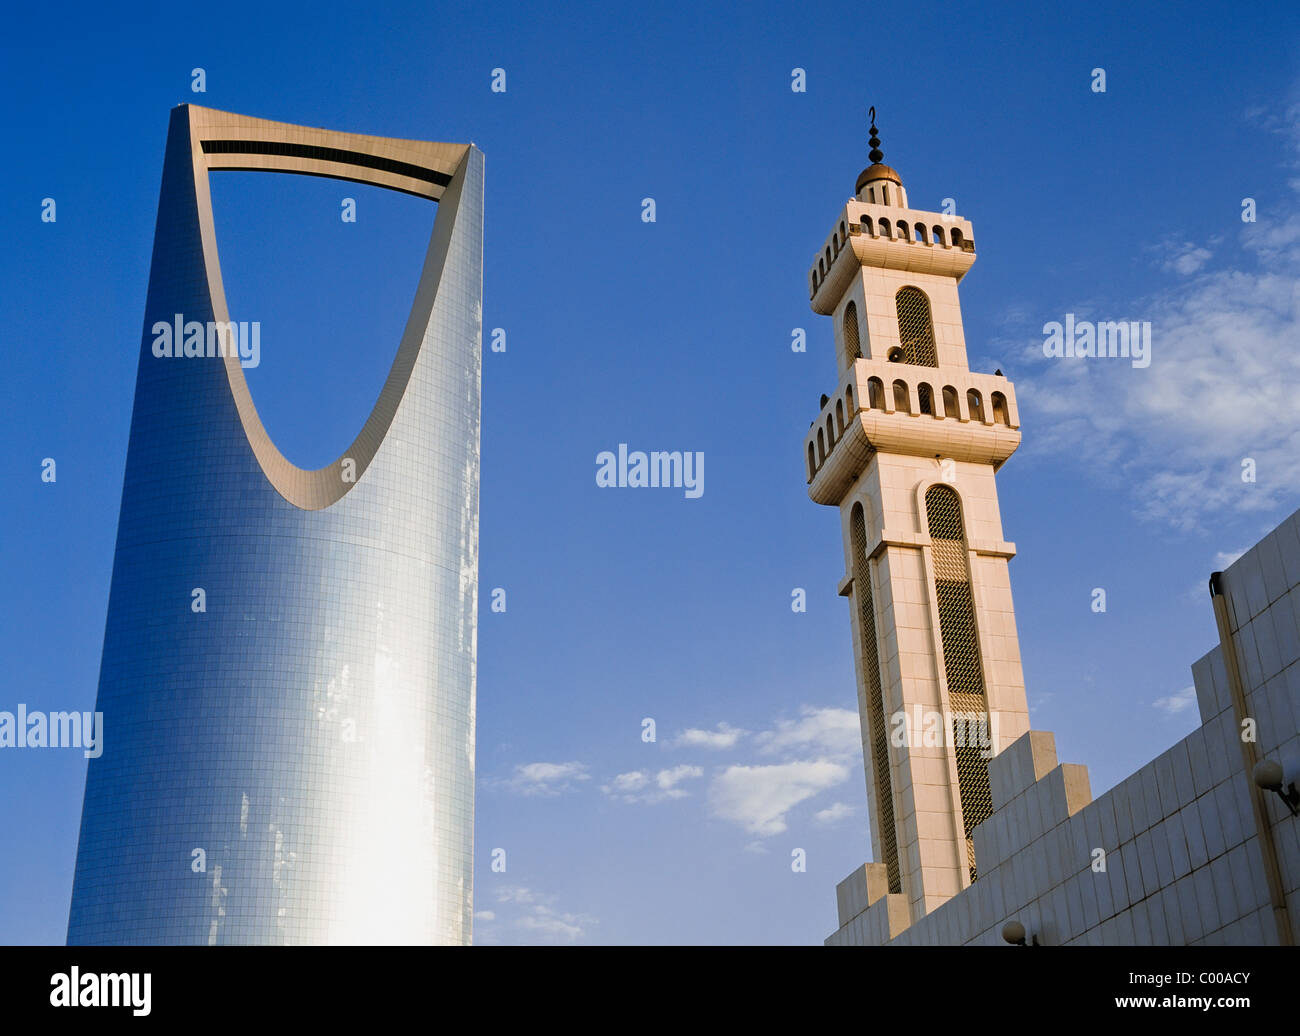 Minareto della moschea accanto al regno della torre centrale a basso angolo di visione Foto Stock